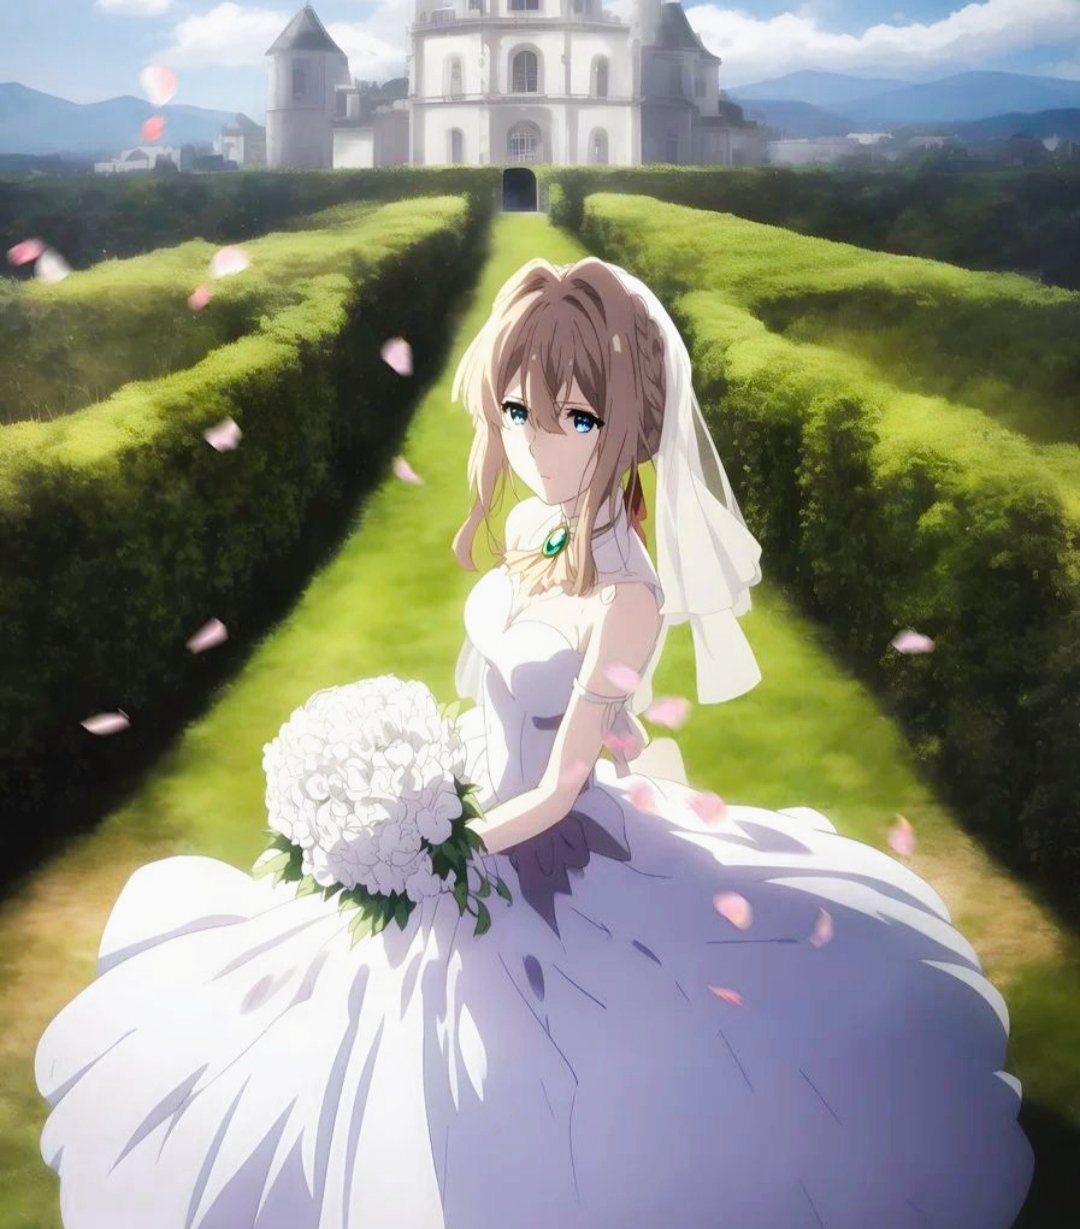 10 Best Anime Like Violet Evergarden